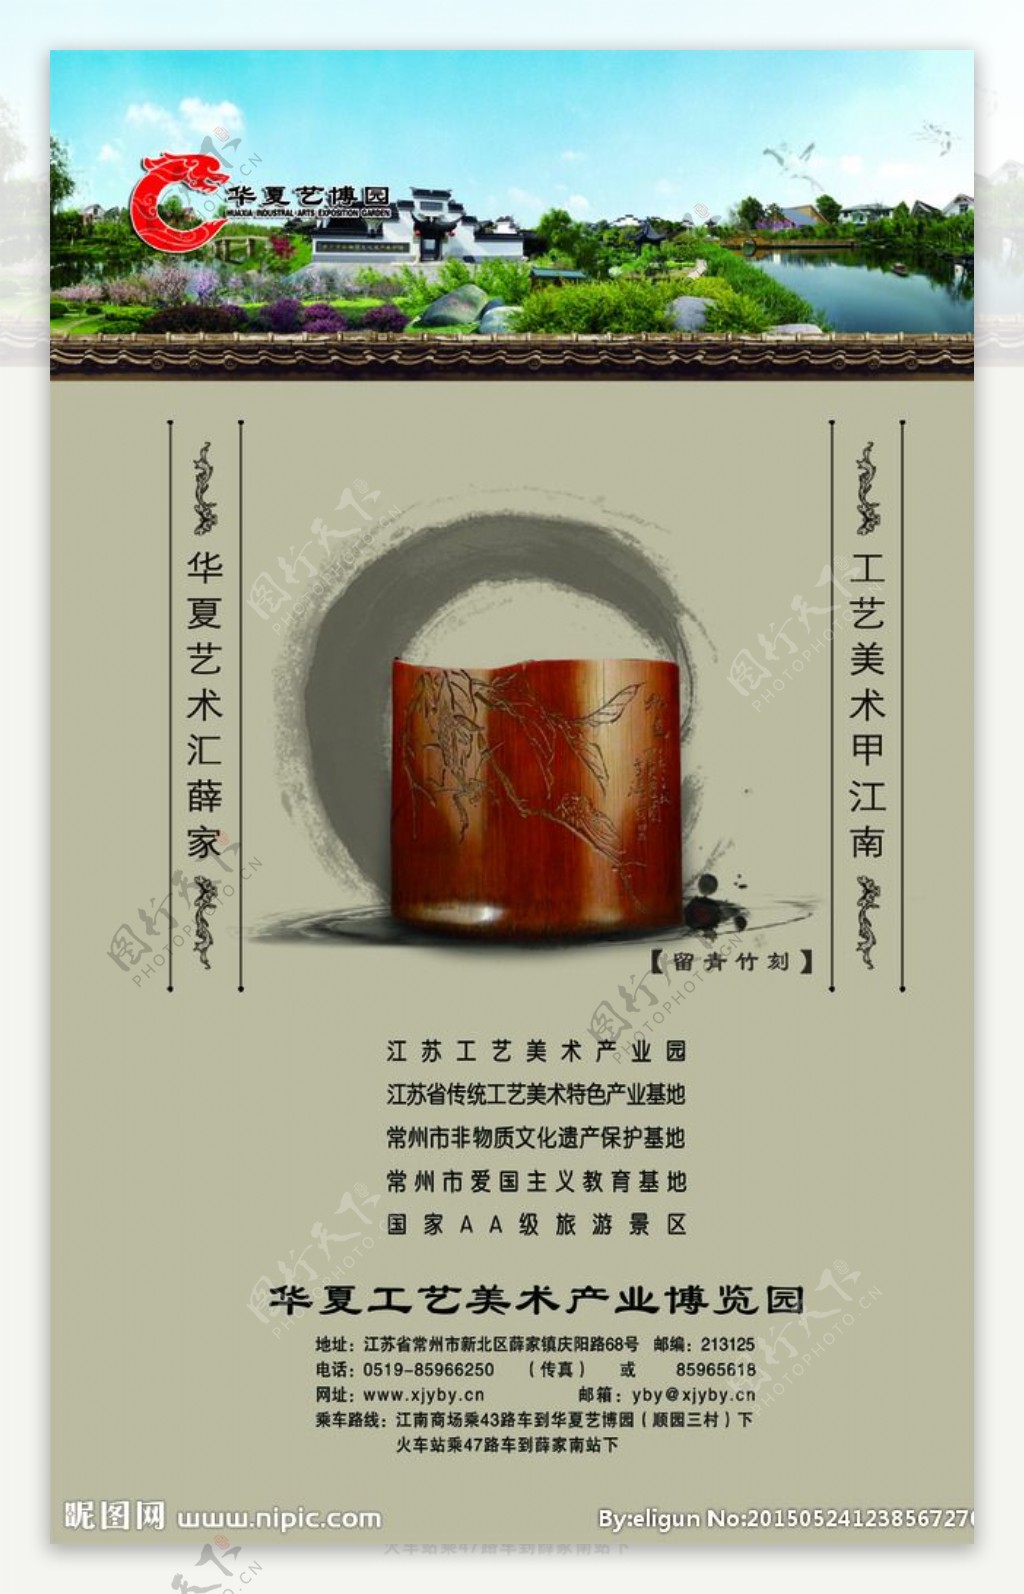 华夏艺博园广告展示图片